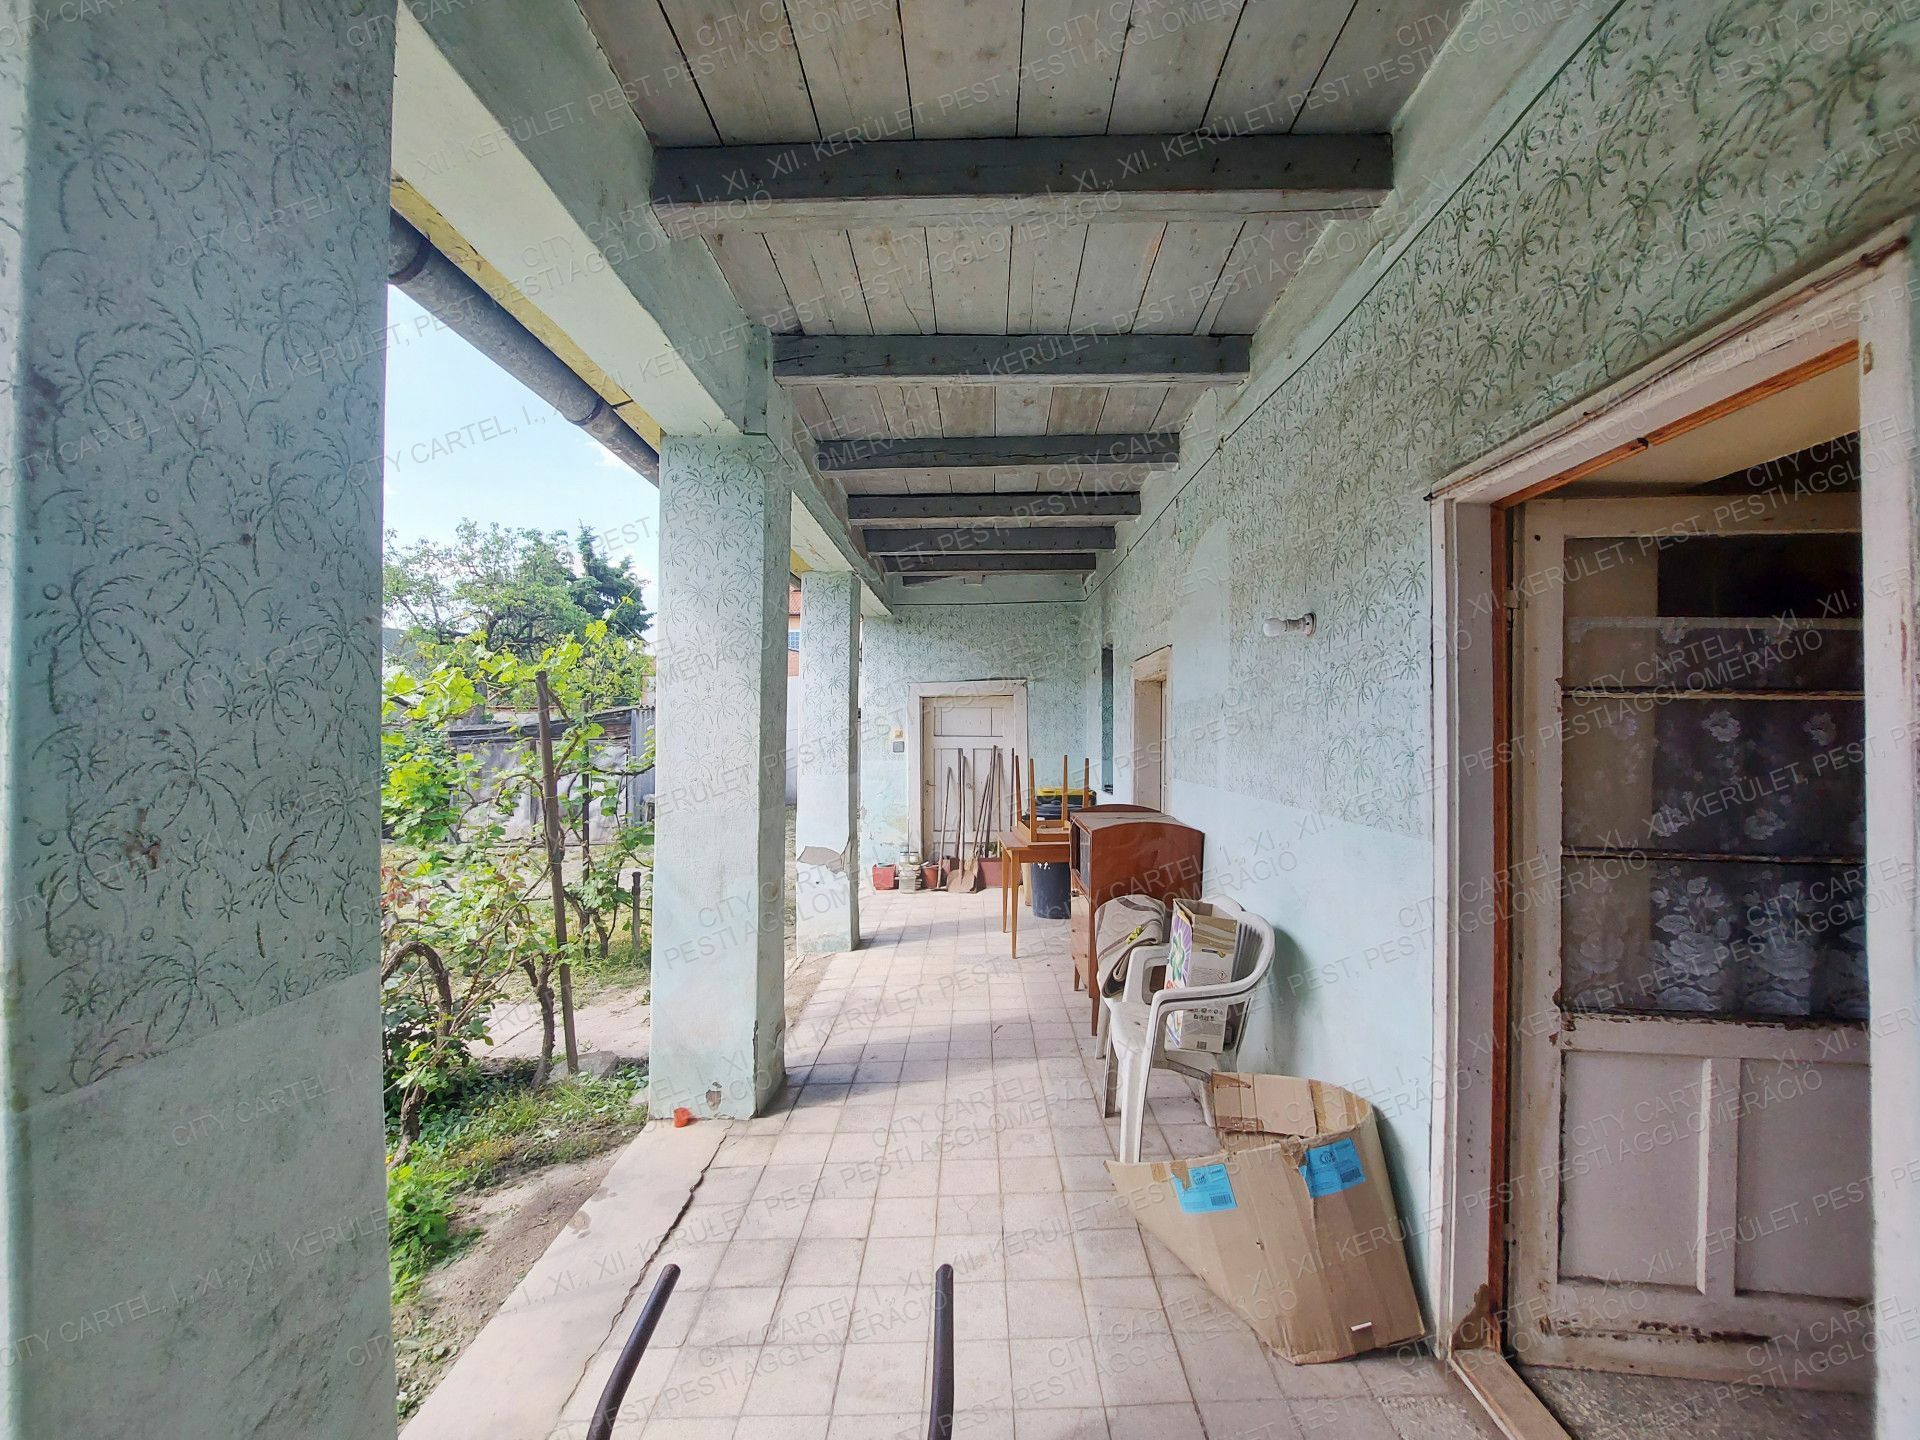 Eladó családi ház Tatabányán a Panoráma lakóparkban